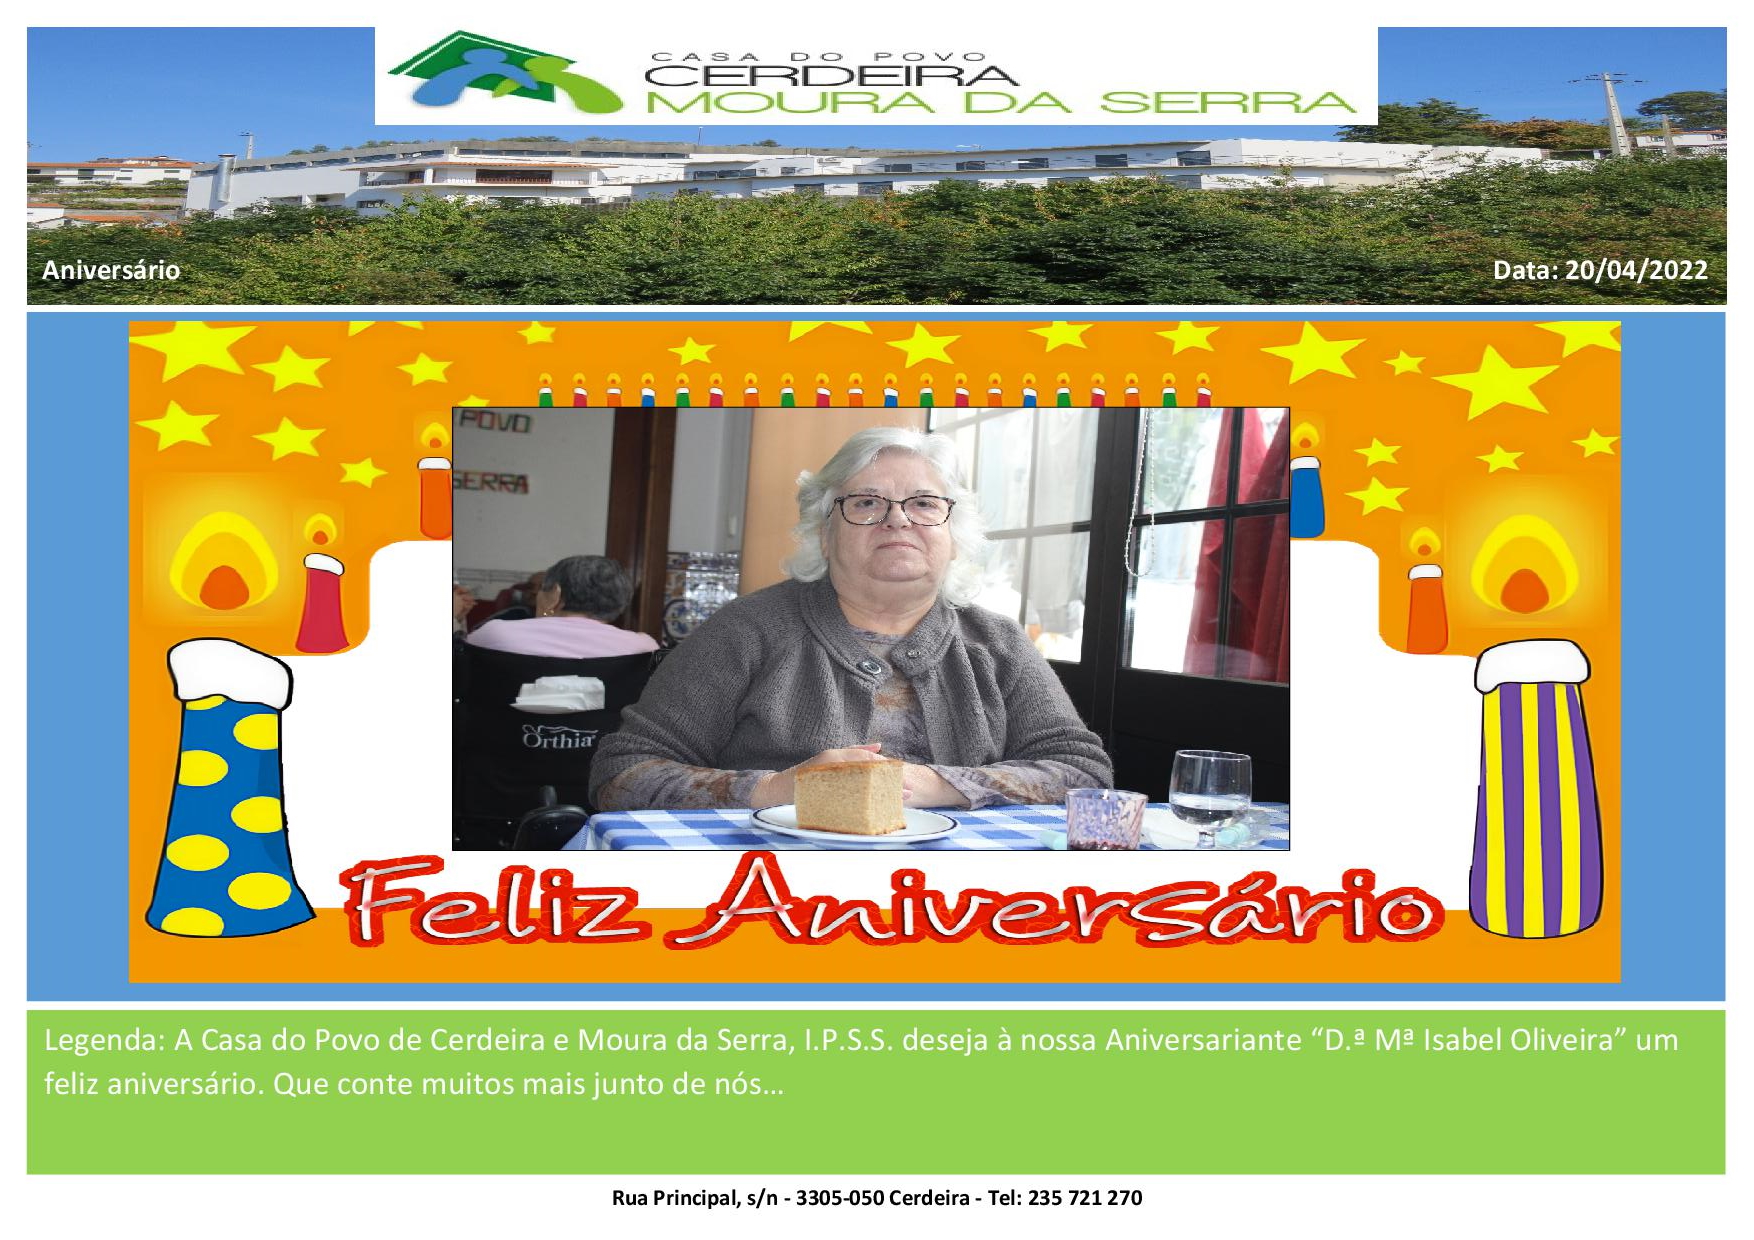 Feliz Aniversário D. Isabel Oliveira em 20/04/2022